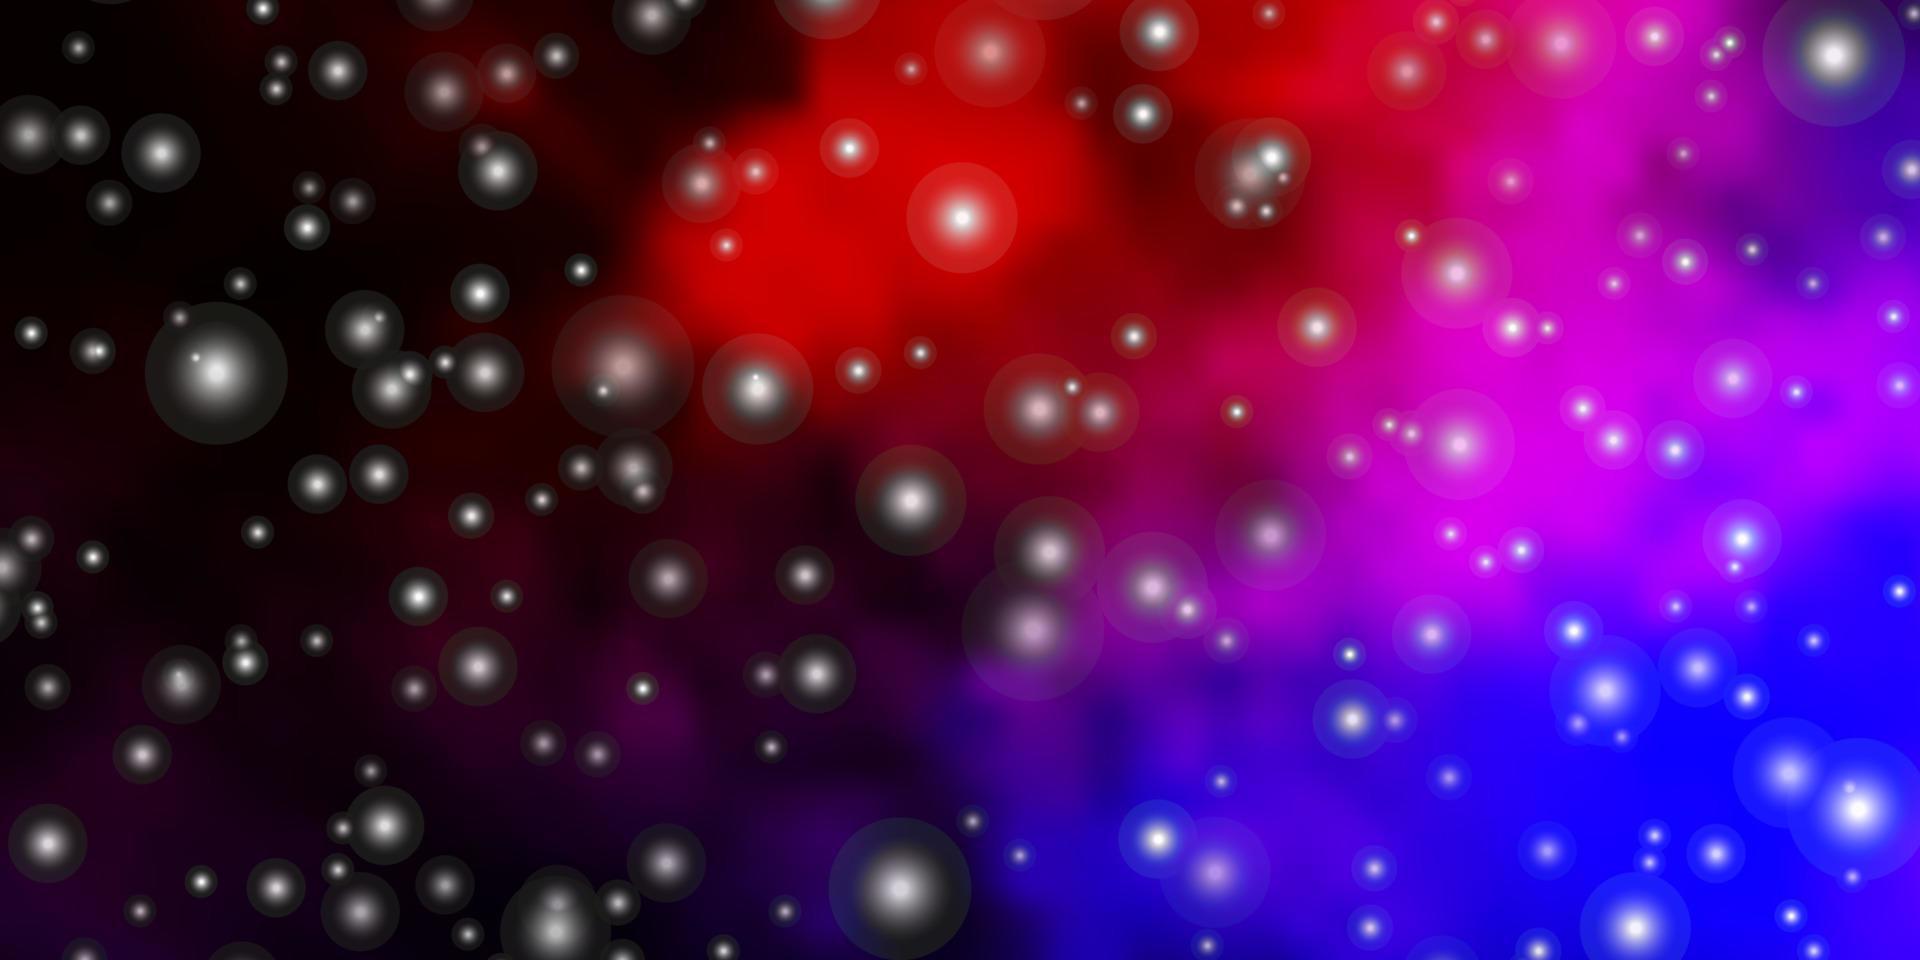 padrão de vetor rosa e vermelho escuro com estrelas abstratas.